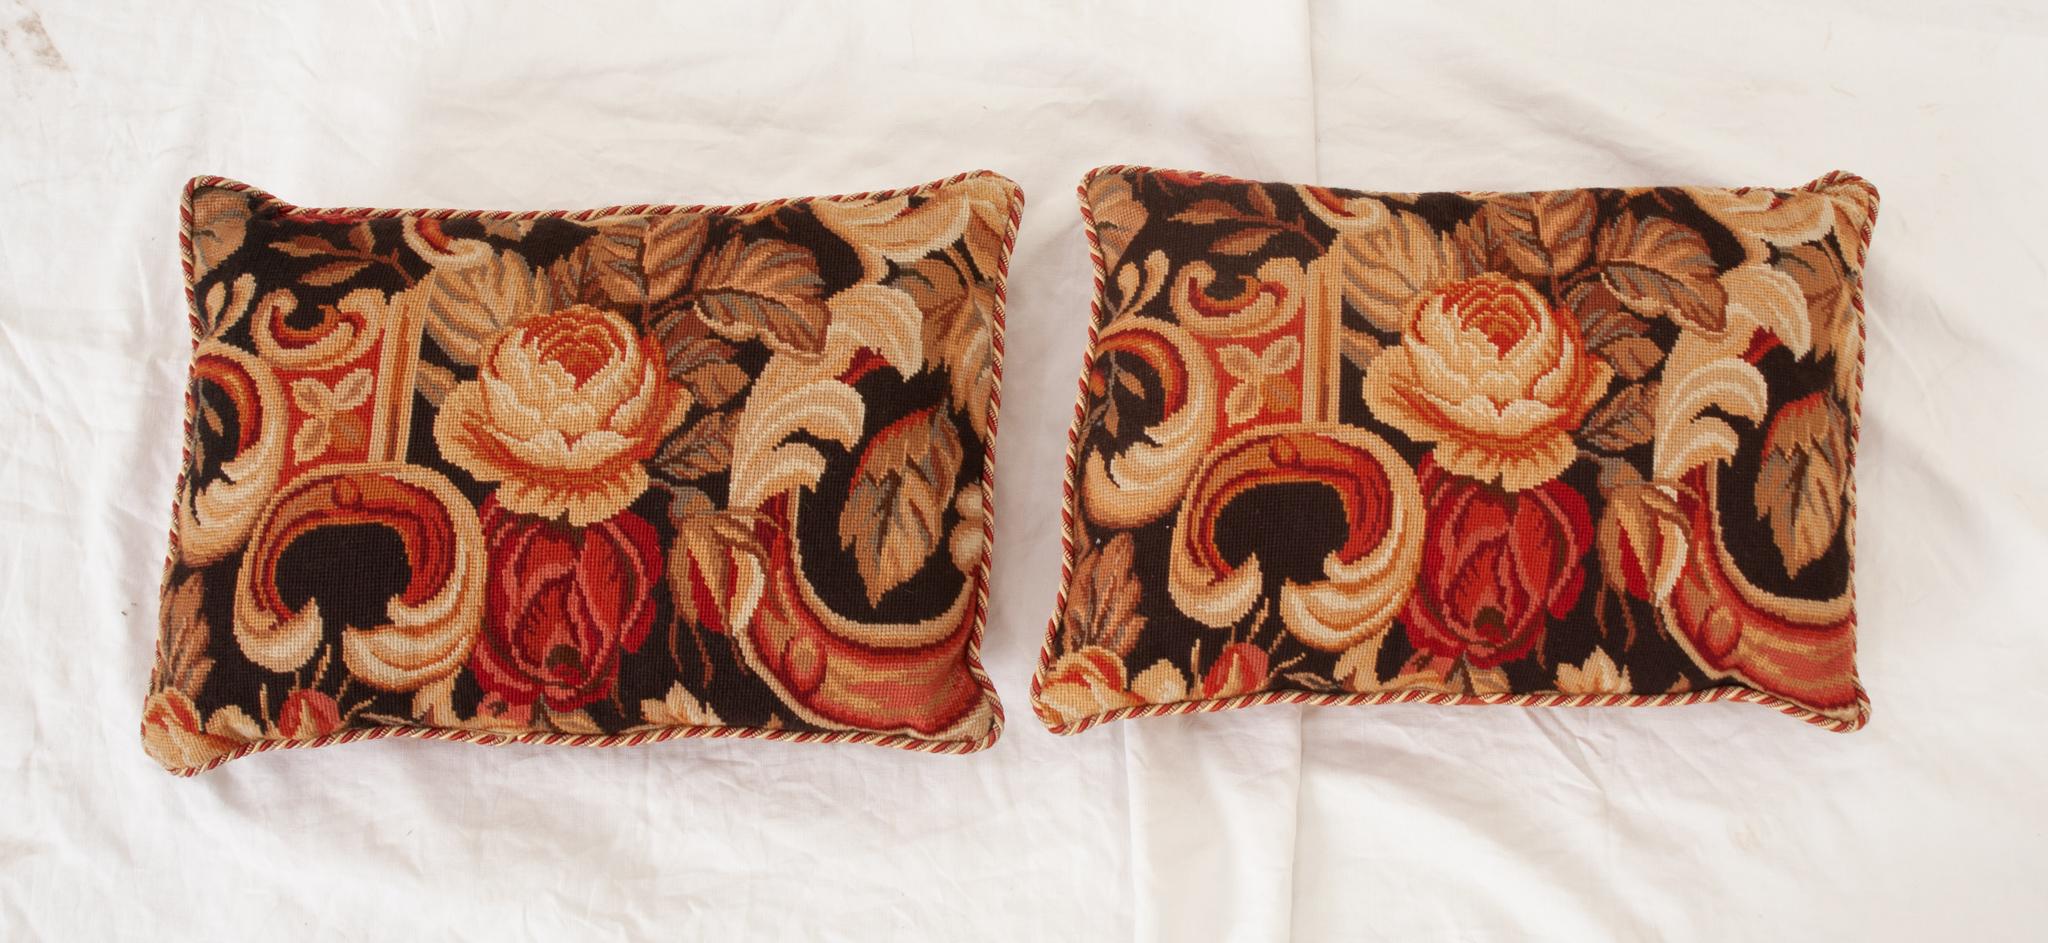  Ein Vintage-Paar von Nadelkissen sind in gutem Zustand. Alle handgefertigt mit Blumen und geflochtenen Verzierungen. Die Kissenbezüge haben eingelegte Reißverschlüsse und die Kisseneinlage kann herausgenommen werden. Sehen Sie sich unbedingt die